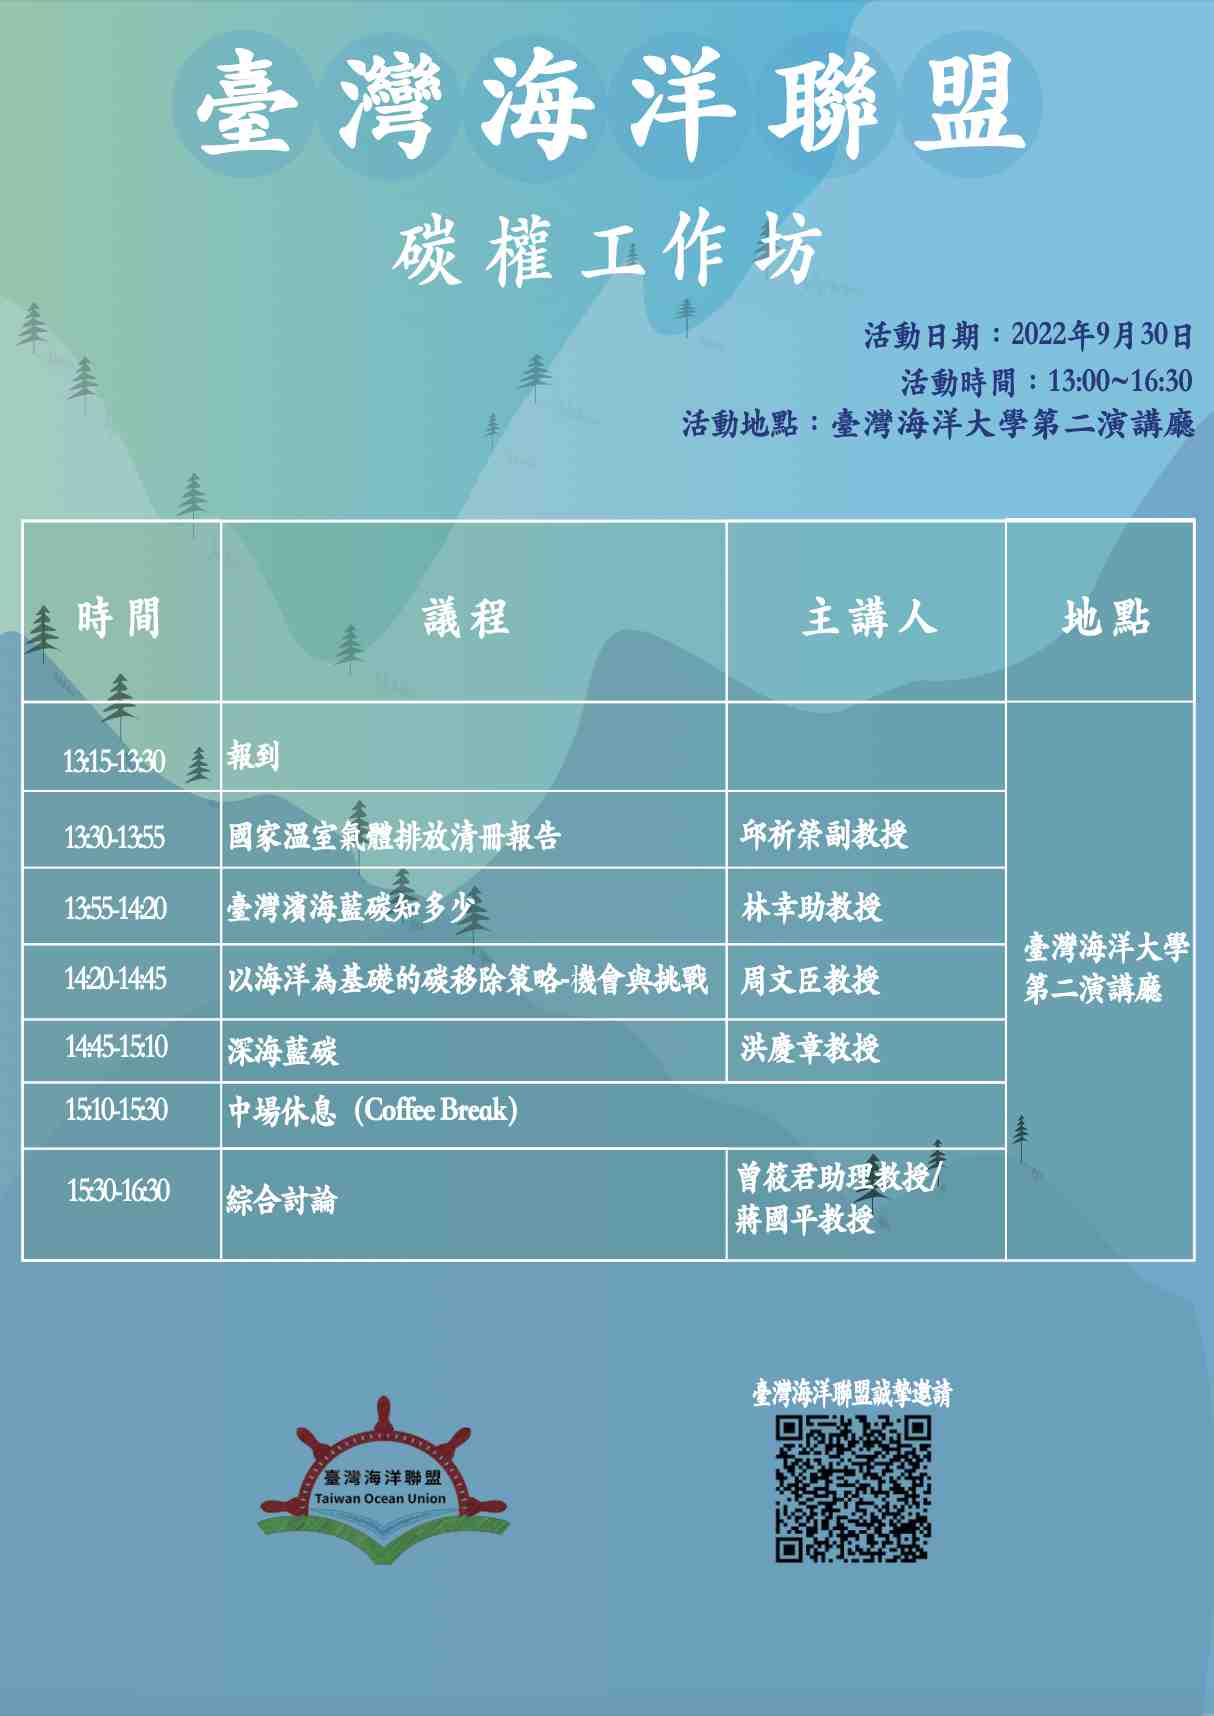 臺灣海洋聯盟-碳權工作坊宣傳用圖片/海報